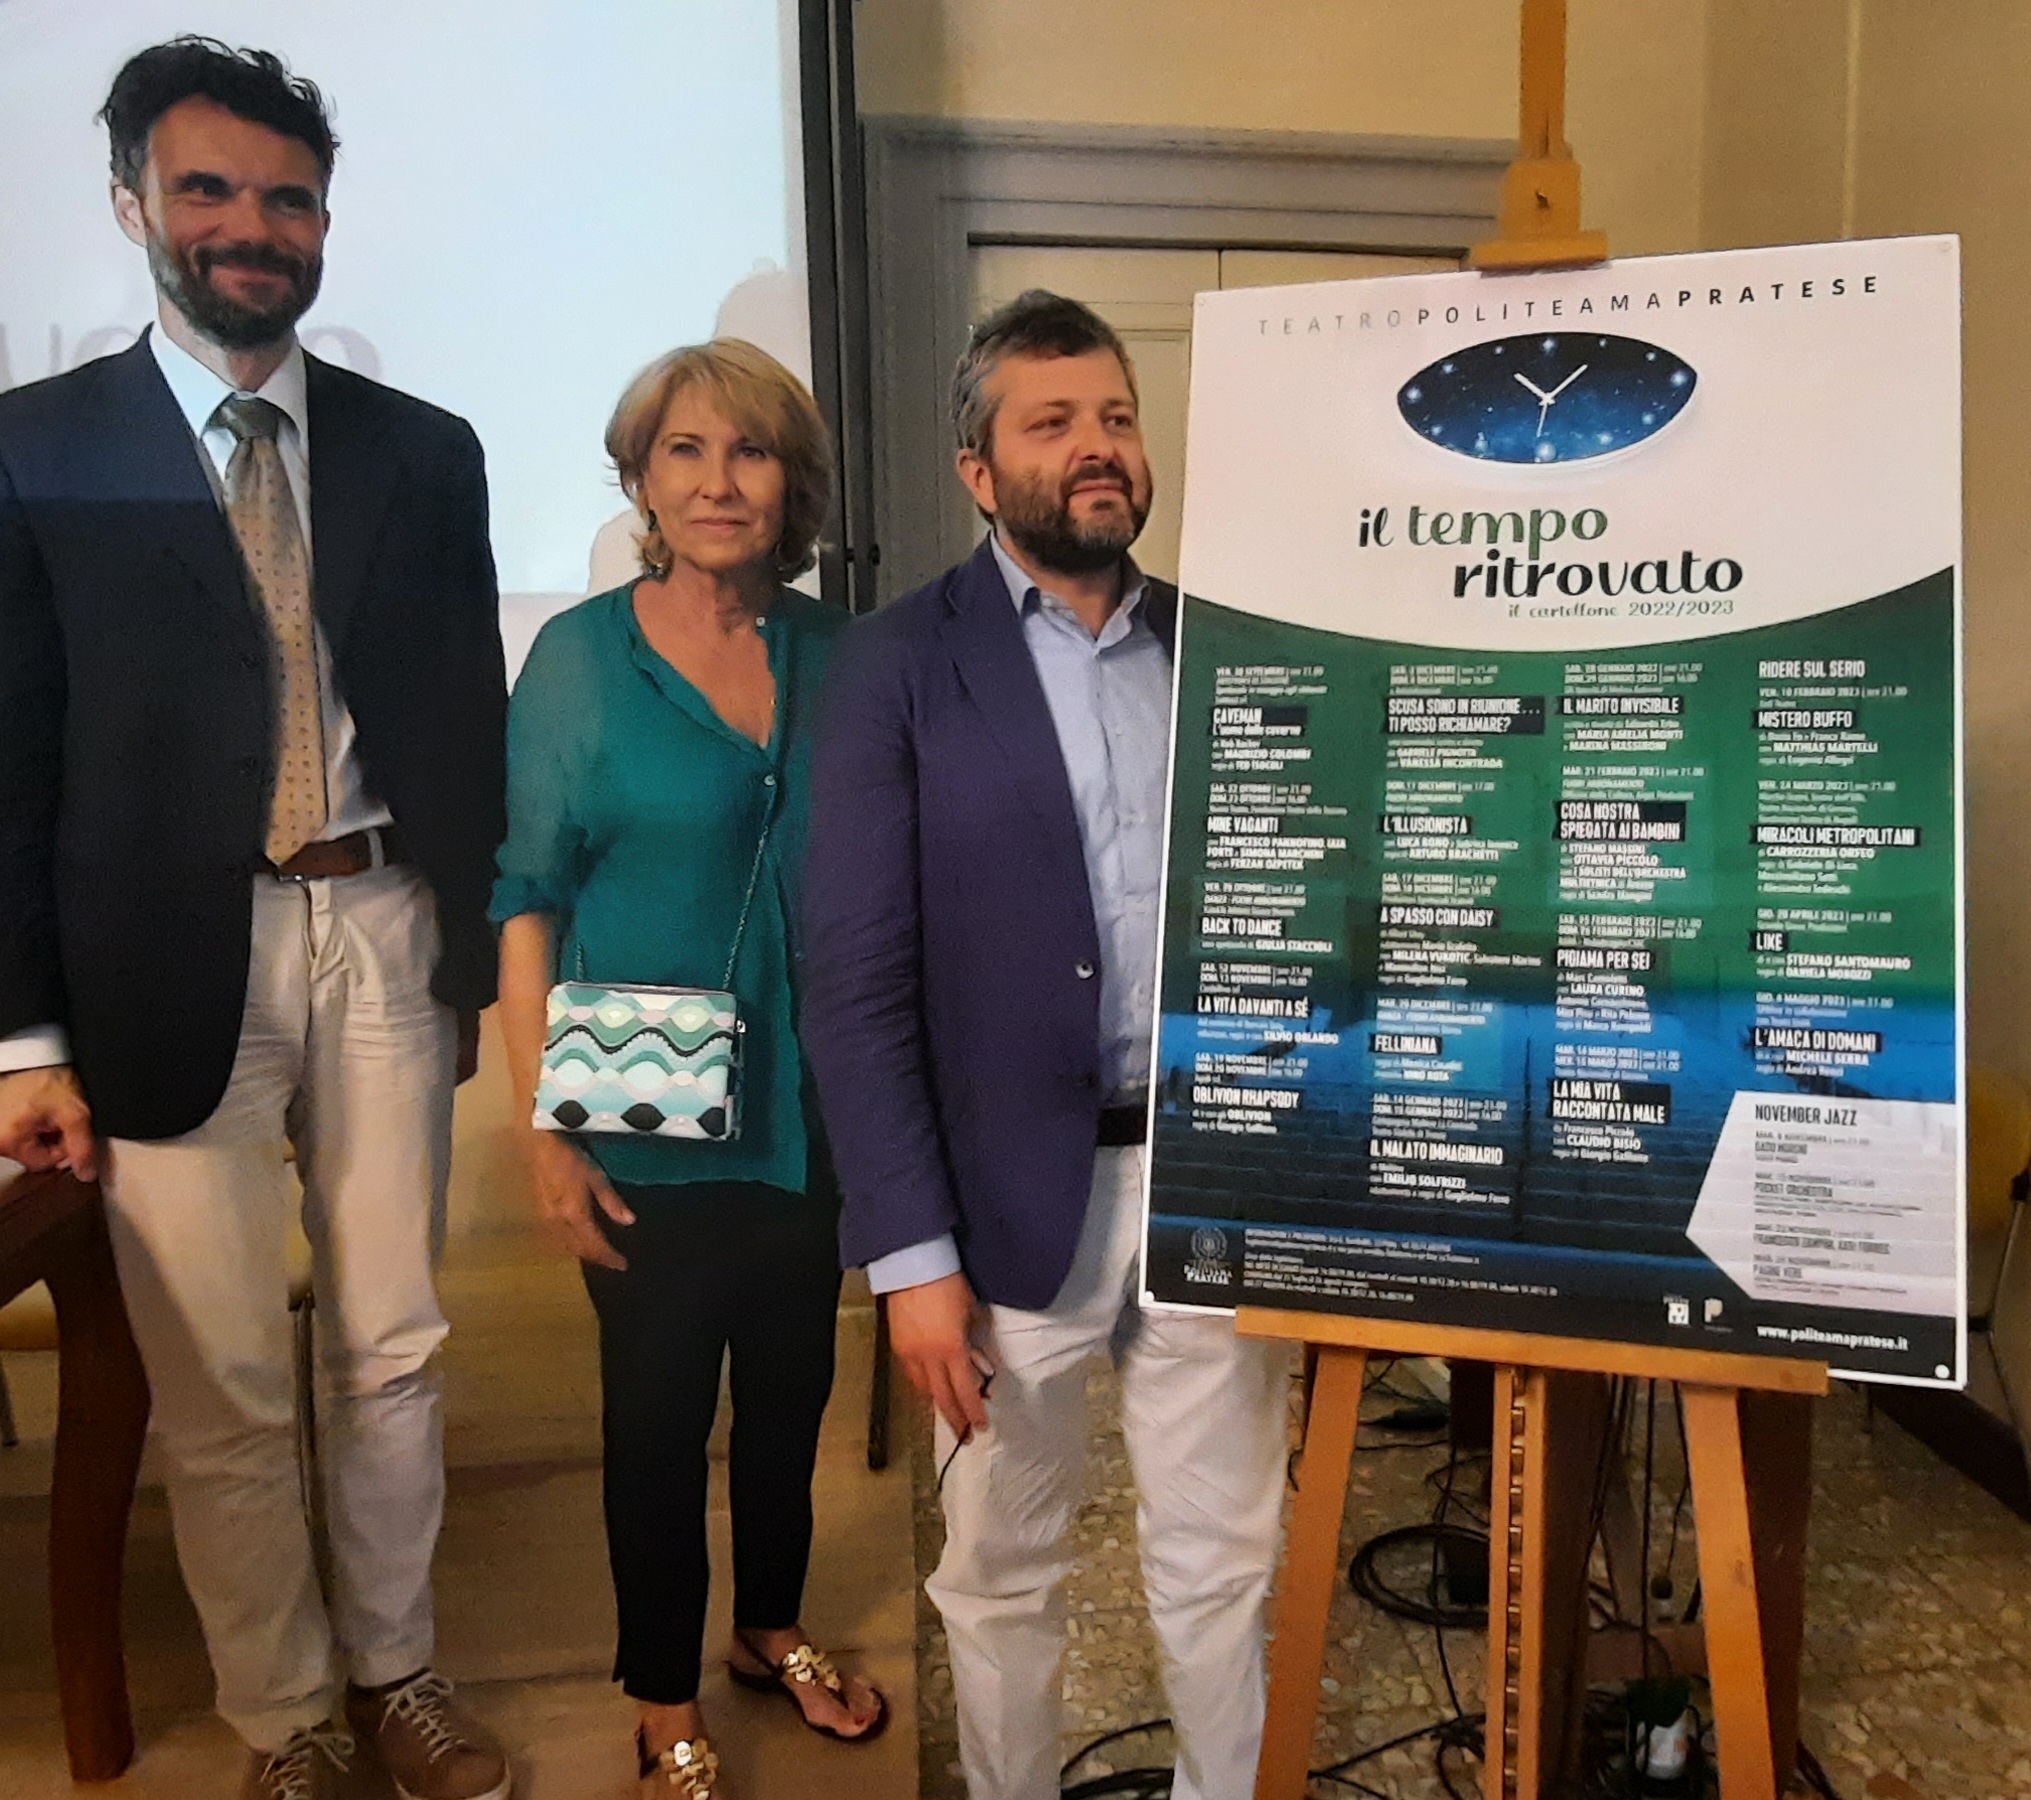 Da sinistra, il sindaco Matteo Biffoni, la presidente Beatrice Magnolfi e l'assessore alla Cultura Simone Mangani